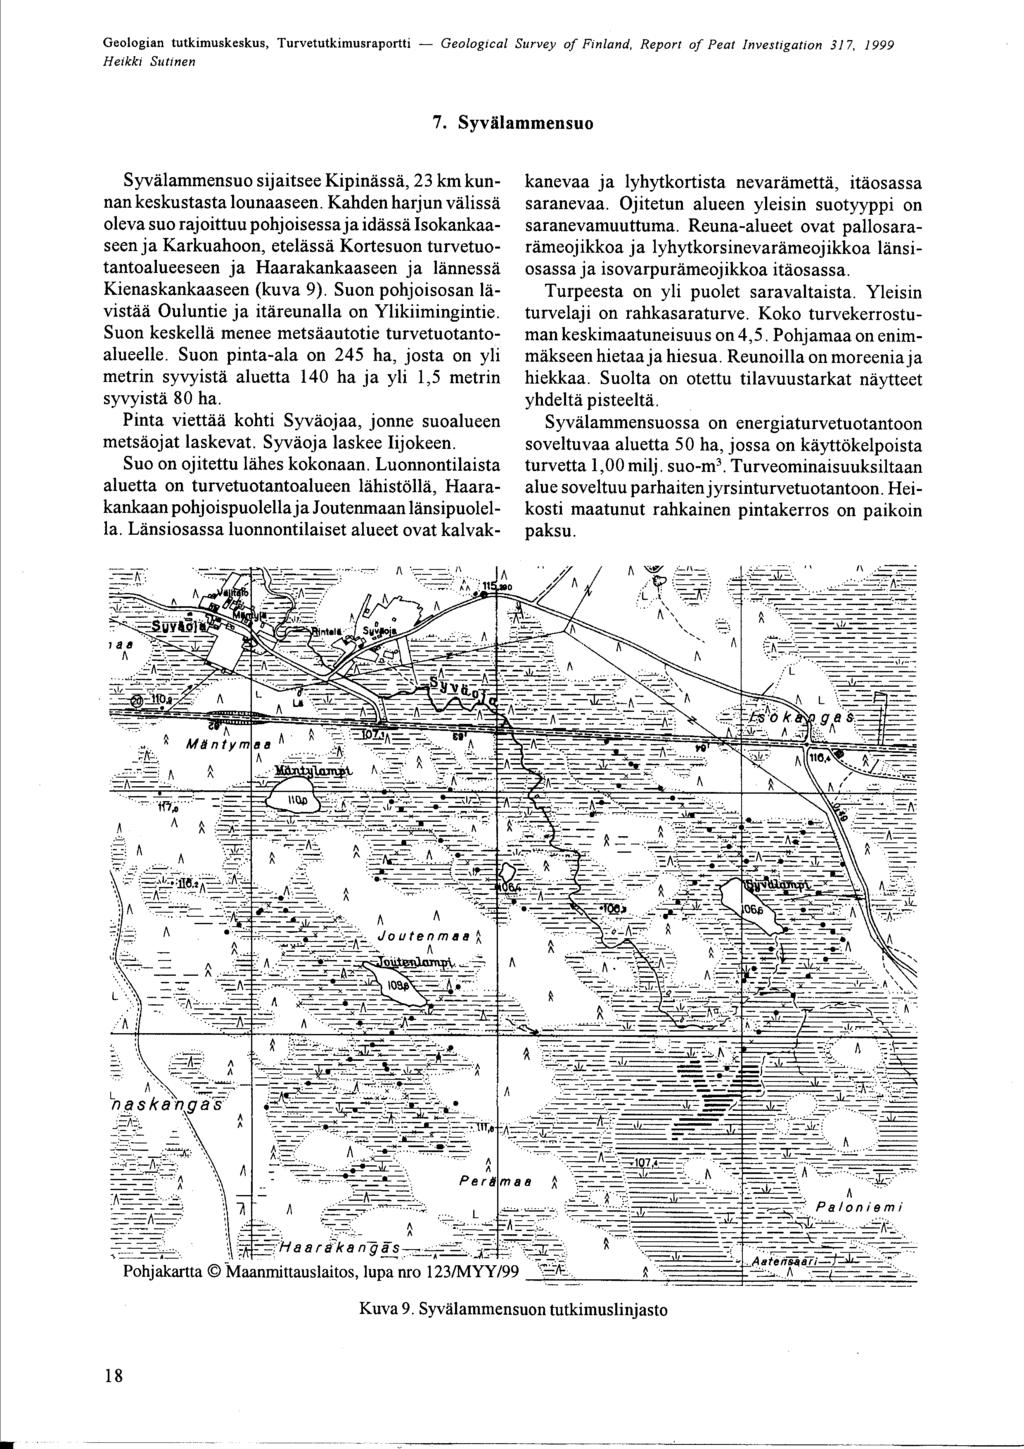 Geologian tutkimuskeskus, Turvetutkimusraportti - Geological Survey of Finland, Report of Peat nvestigation 37, 999 7 SyvÄlammensuo SyvÄlammensuo sijaitsee KipinÄssÄ, 23 km kunnan keskustasta